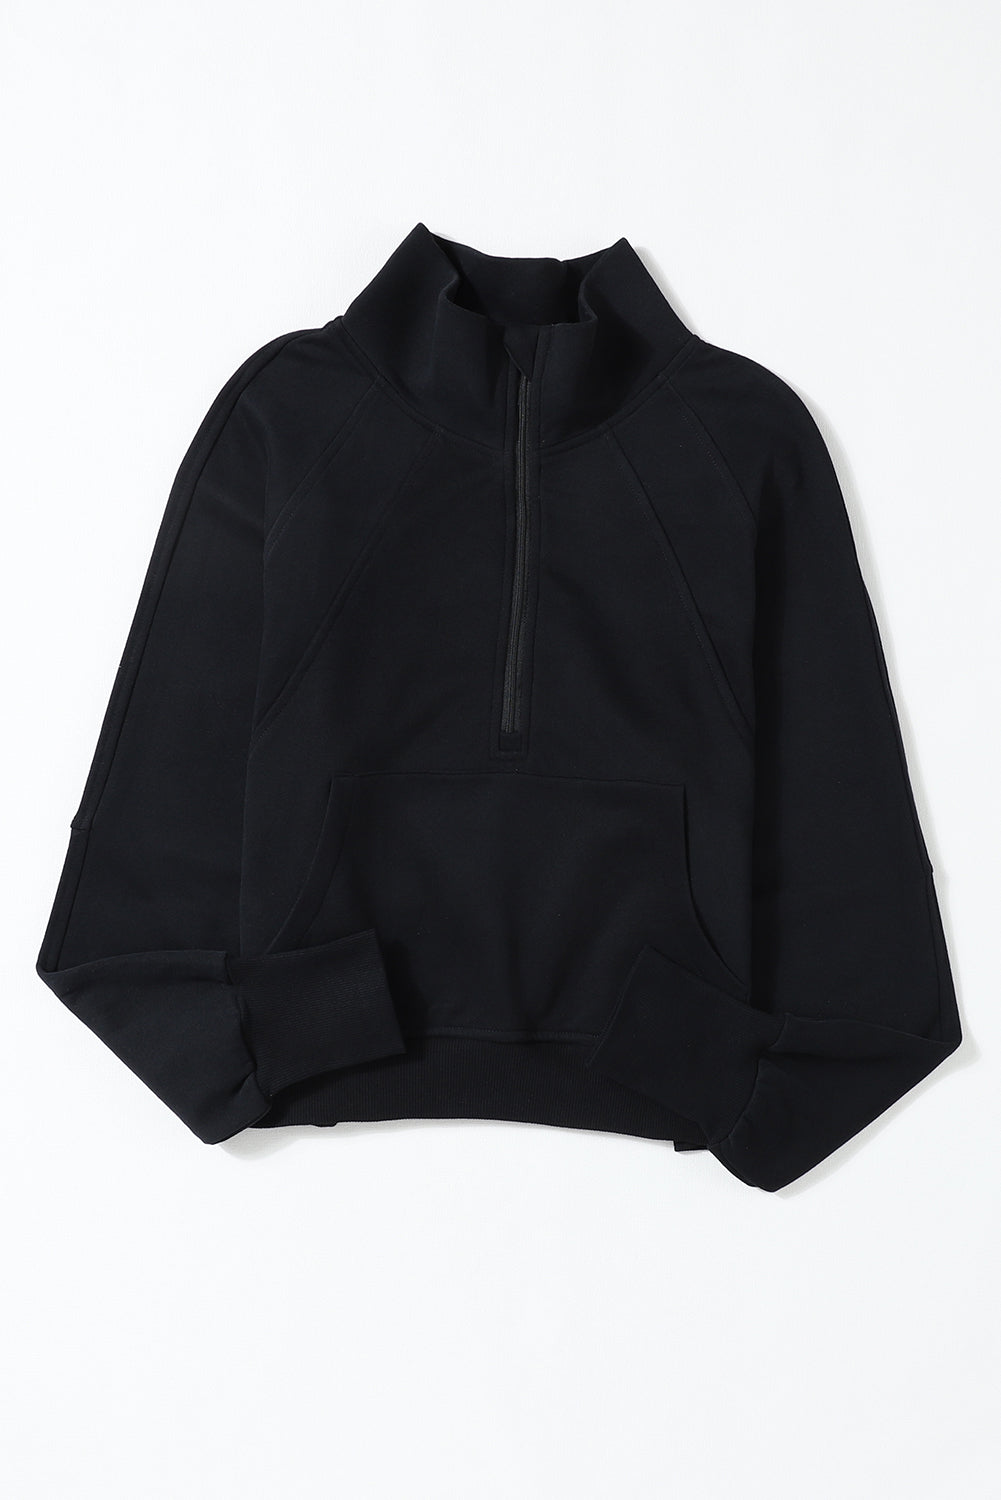 Schwarzes Sweatshirt mit Stehkragen und gerippten Daumenlöchern und Reißverschluss